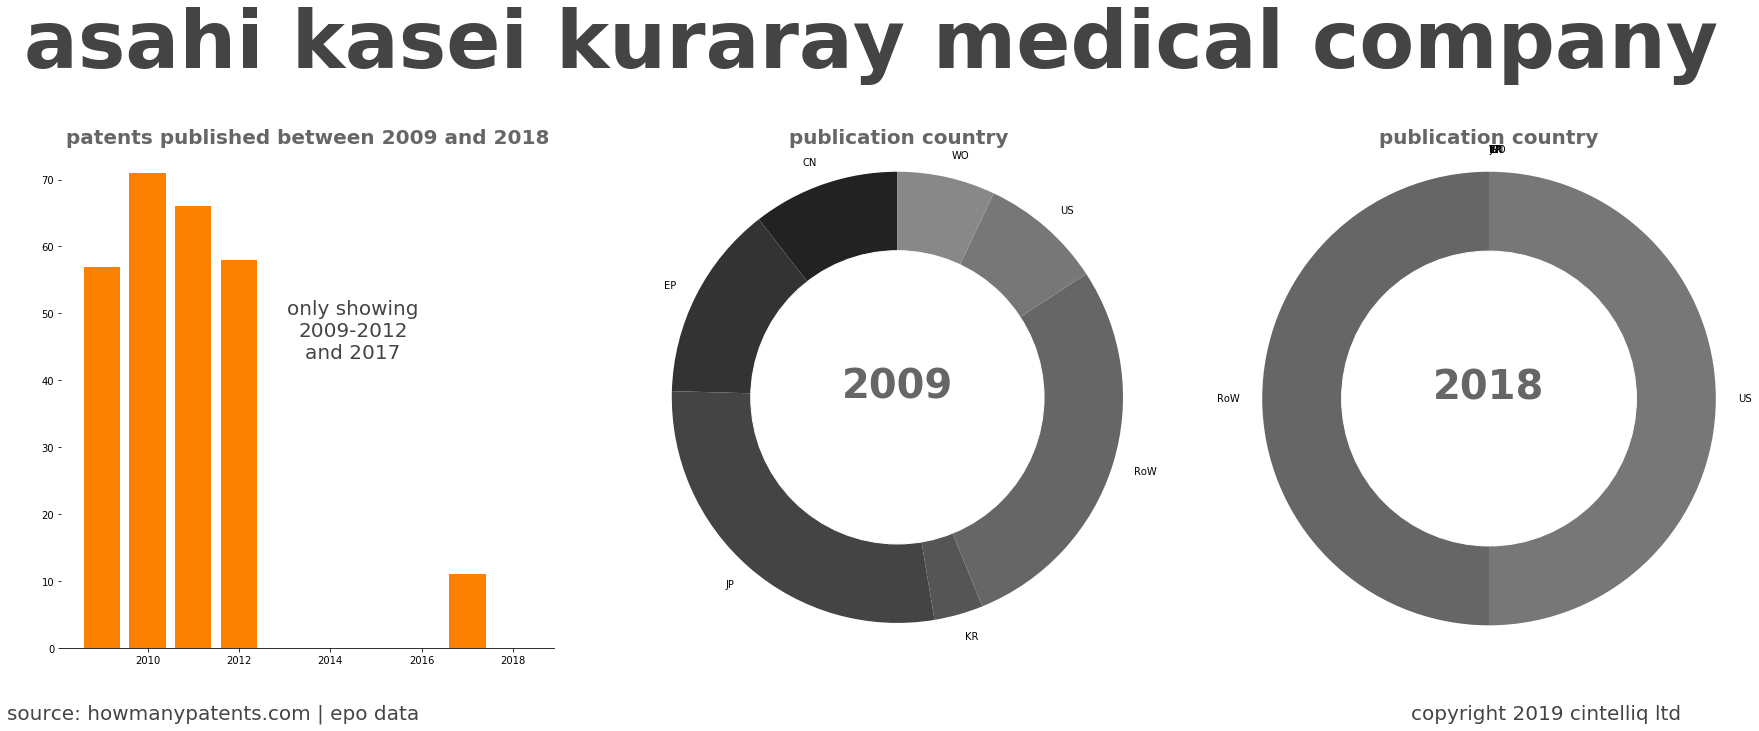 summary of patents for Asahi Kasei Kuraray Medical Company